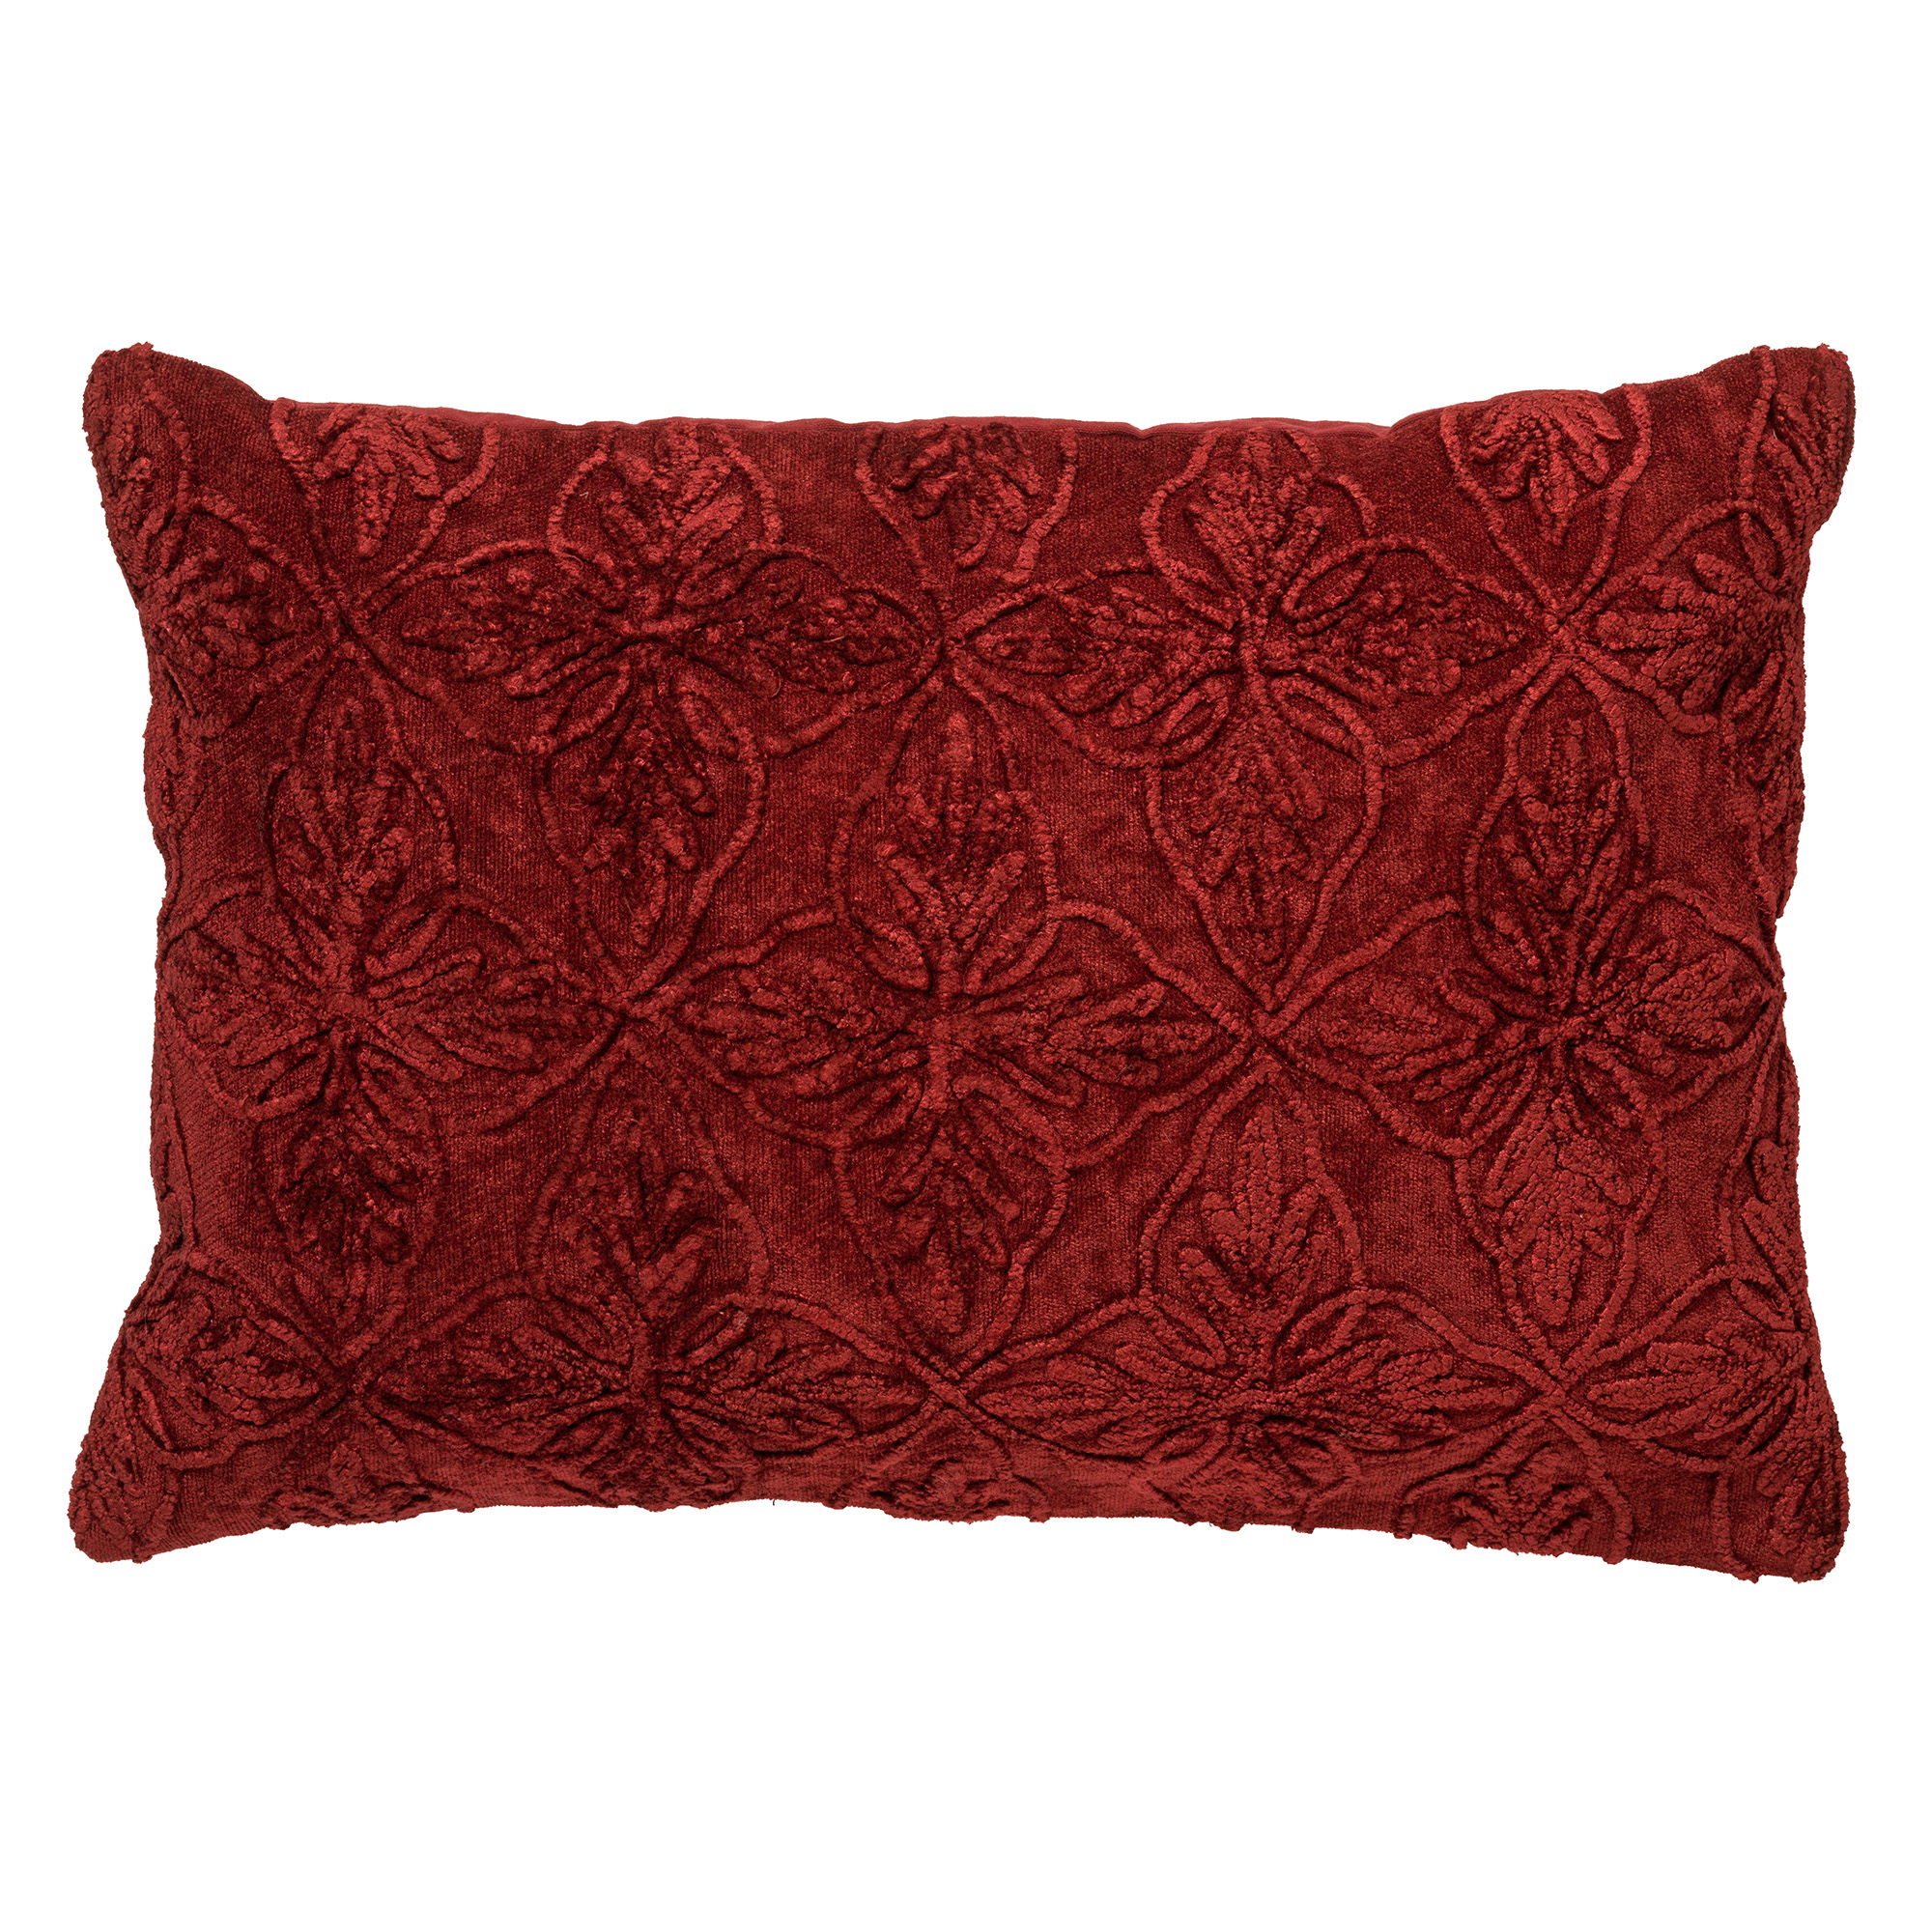 AMAR - Kussenhoes 40x60 cm - 100% katoen - bloemen design - Merlot - rood